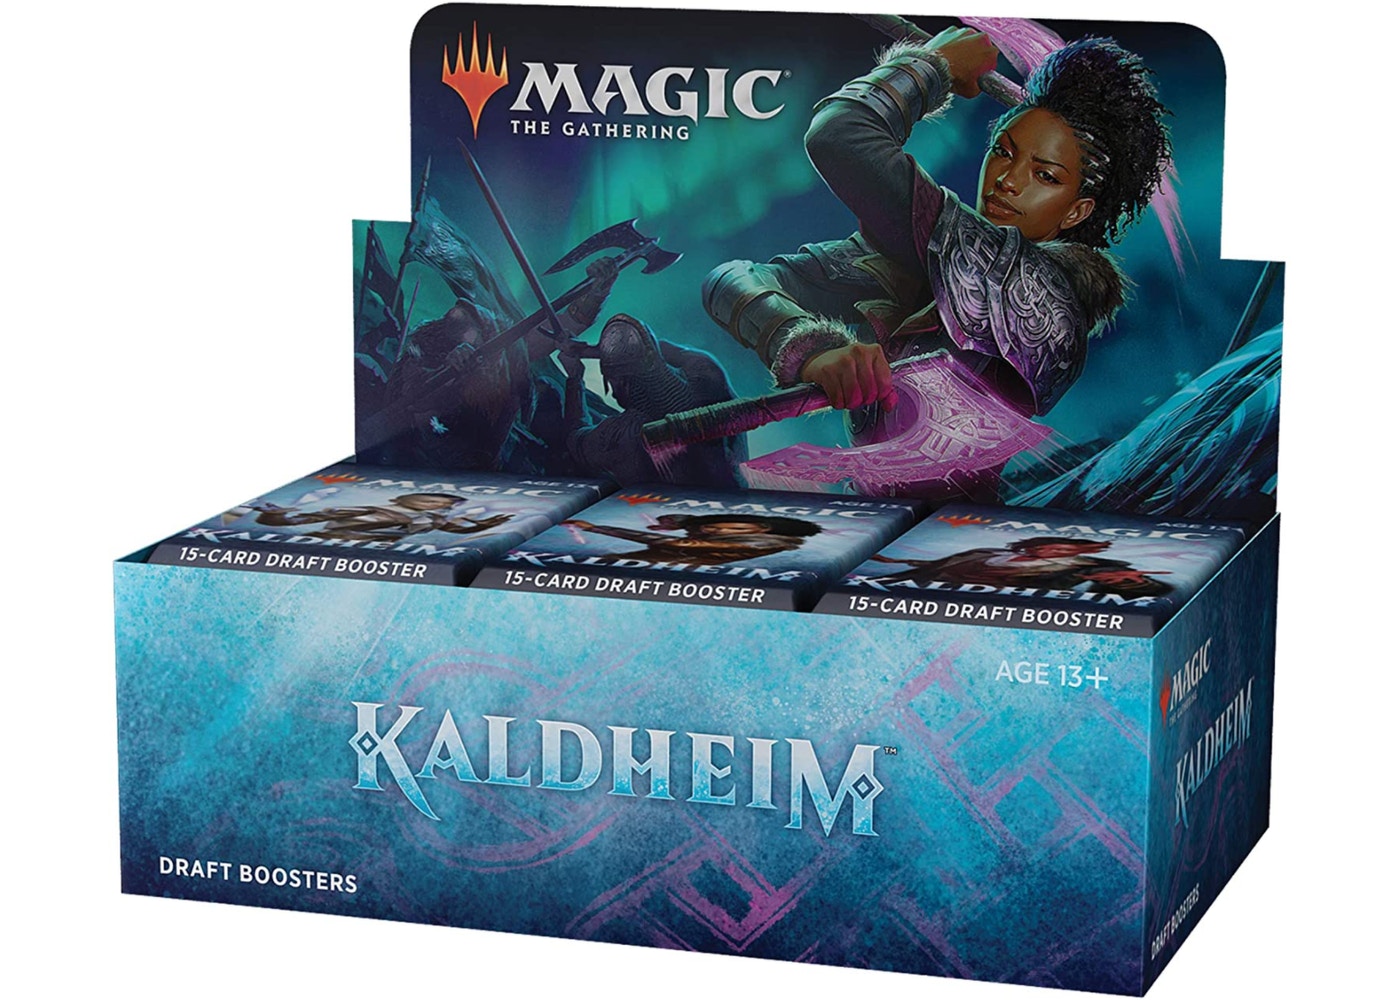 Magic Kaldheim Draft Booster Box